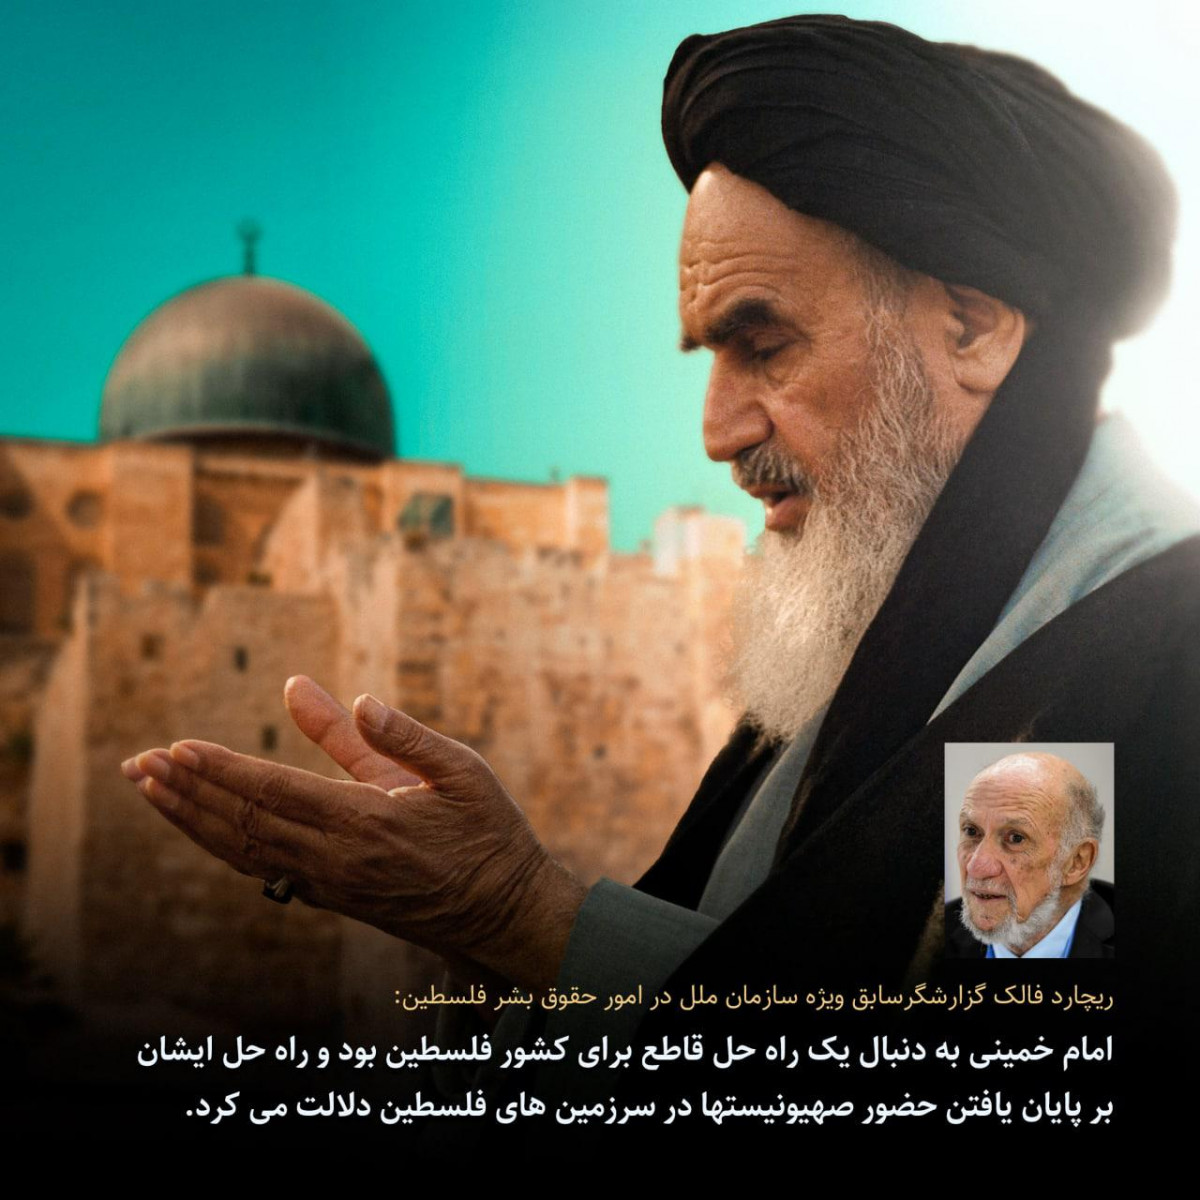 پوستر :  تاثیر اندیشه های امام خمینی بر مسئله فلسطین از نگاه اندیشمدان جهان 2